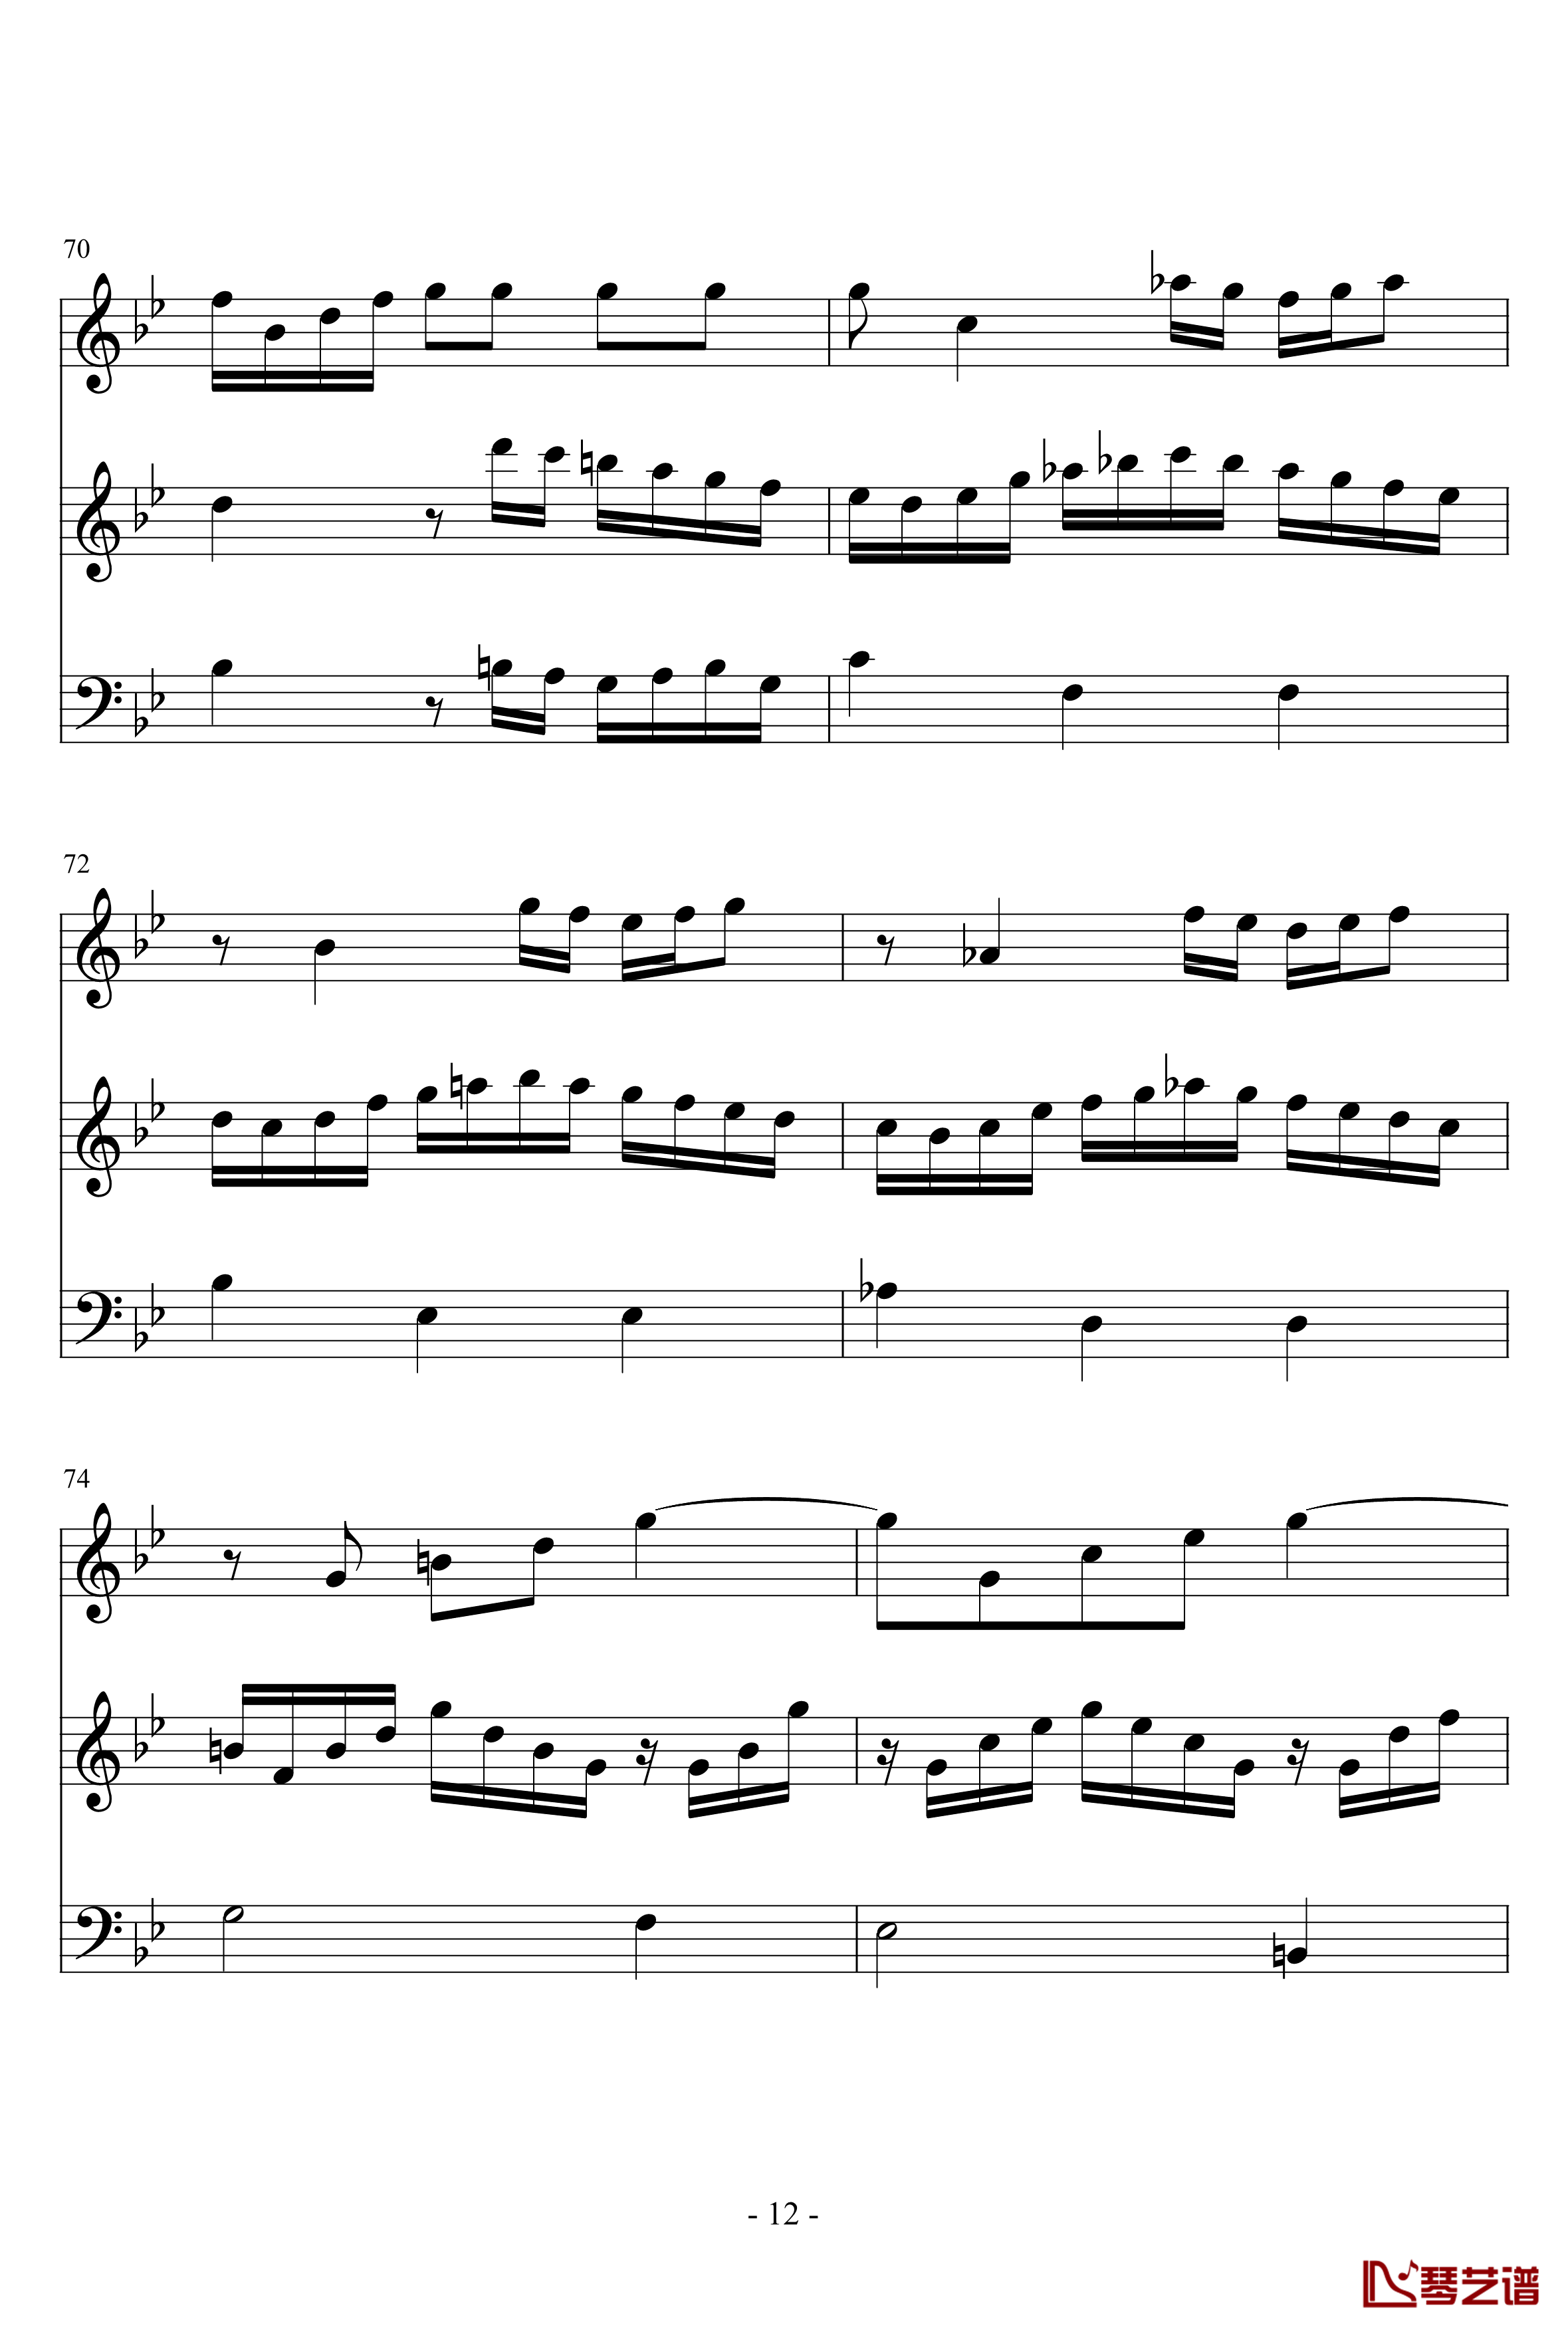 长笛与羽管键琴奏鸣曲第一乐章钢琴谱-巴赫-P.E.Bach12